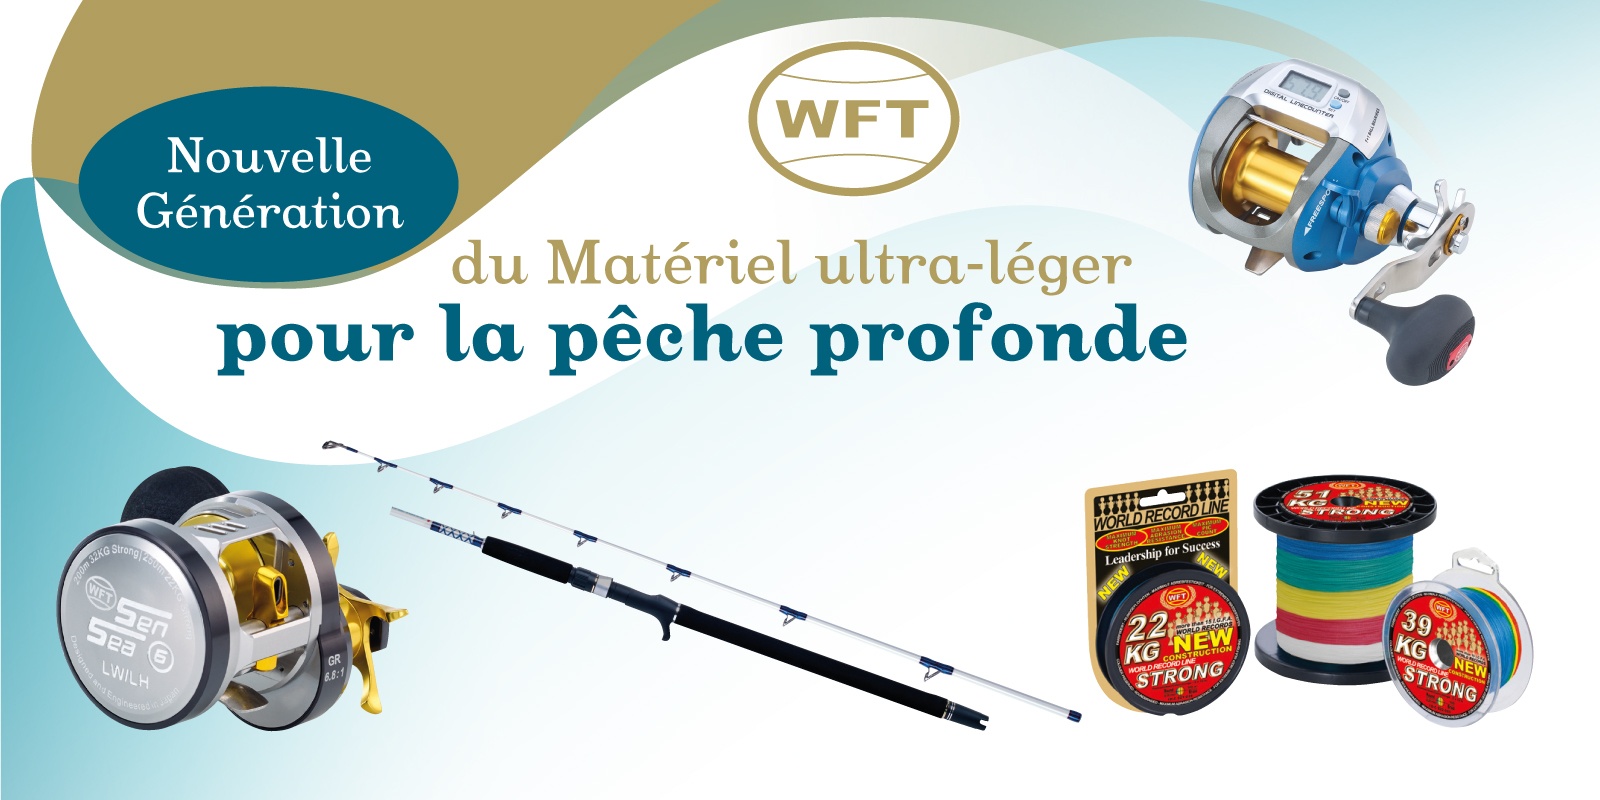 Catalogue WFT 2018, du matériel pour la pêche profonde